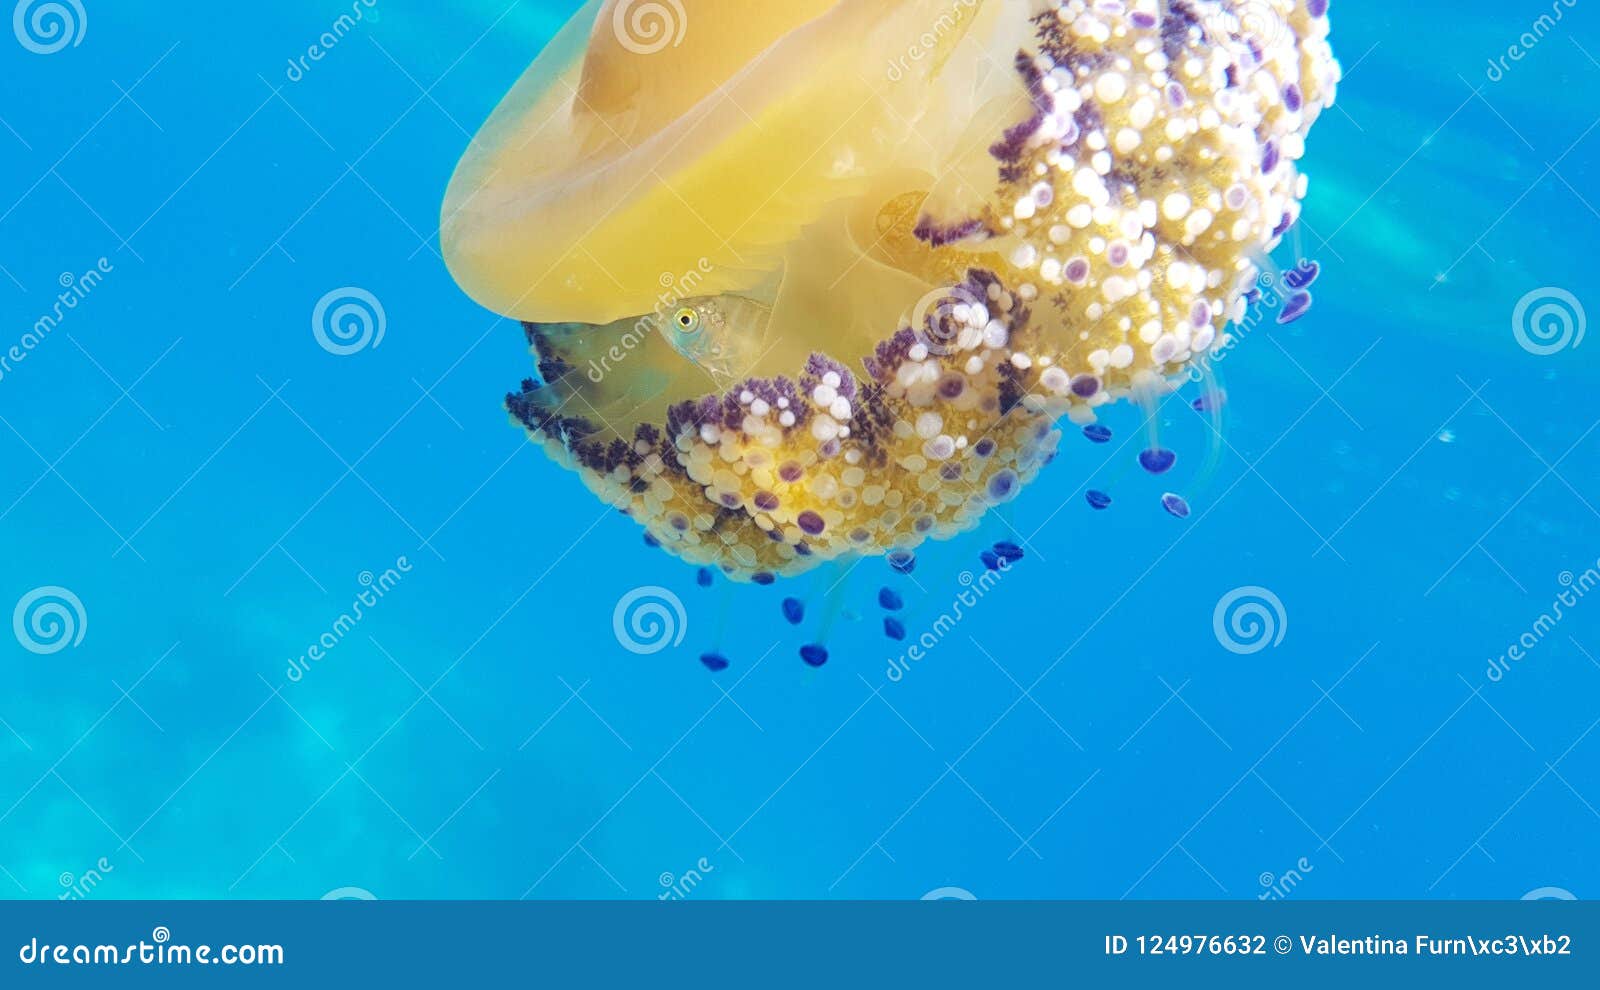 medusa cassiopea mediterranea caught underwater